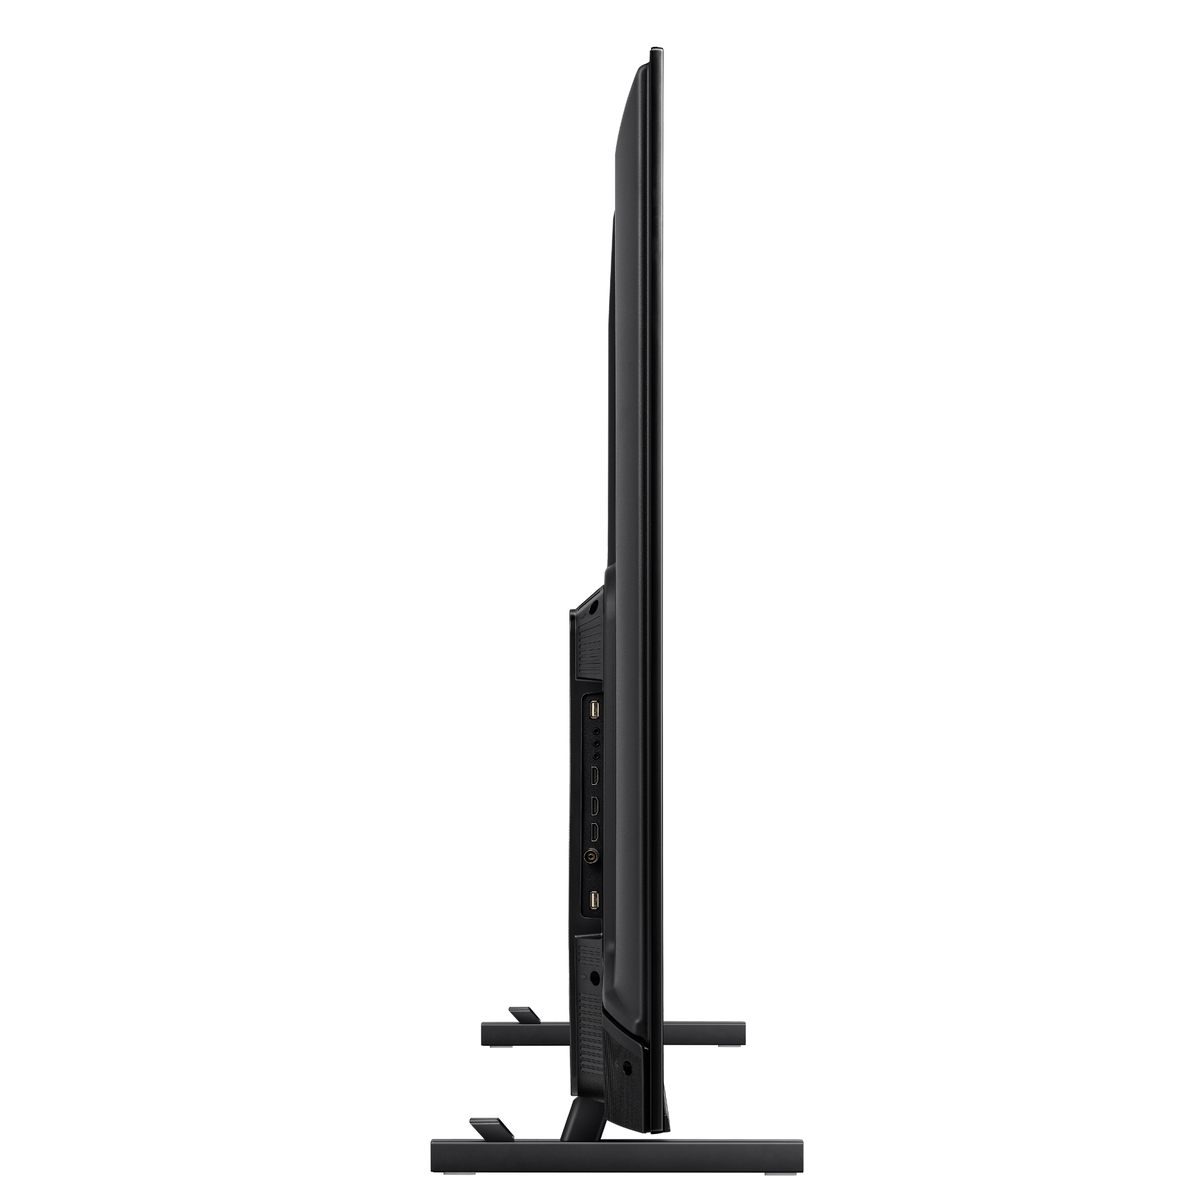 Hisense 75 inches 4K UHD LED Smart TV, Black, 75A7K